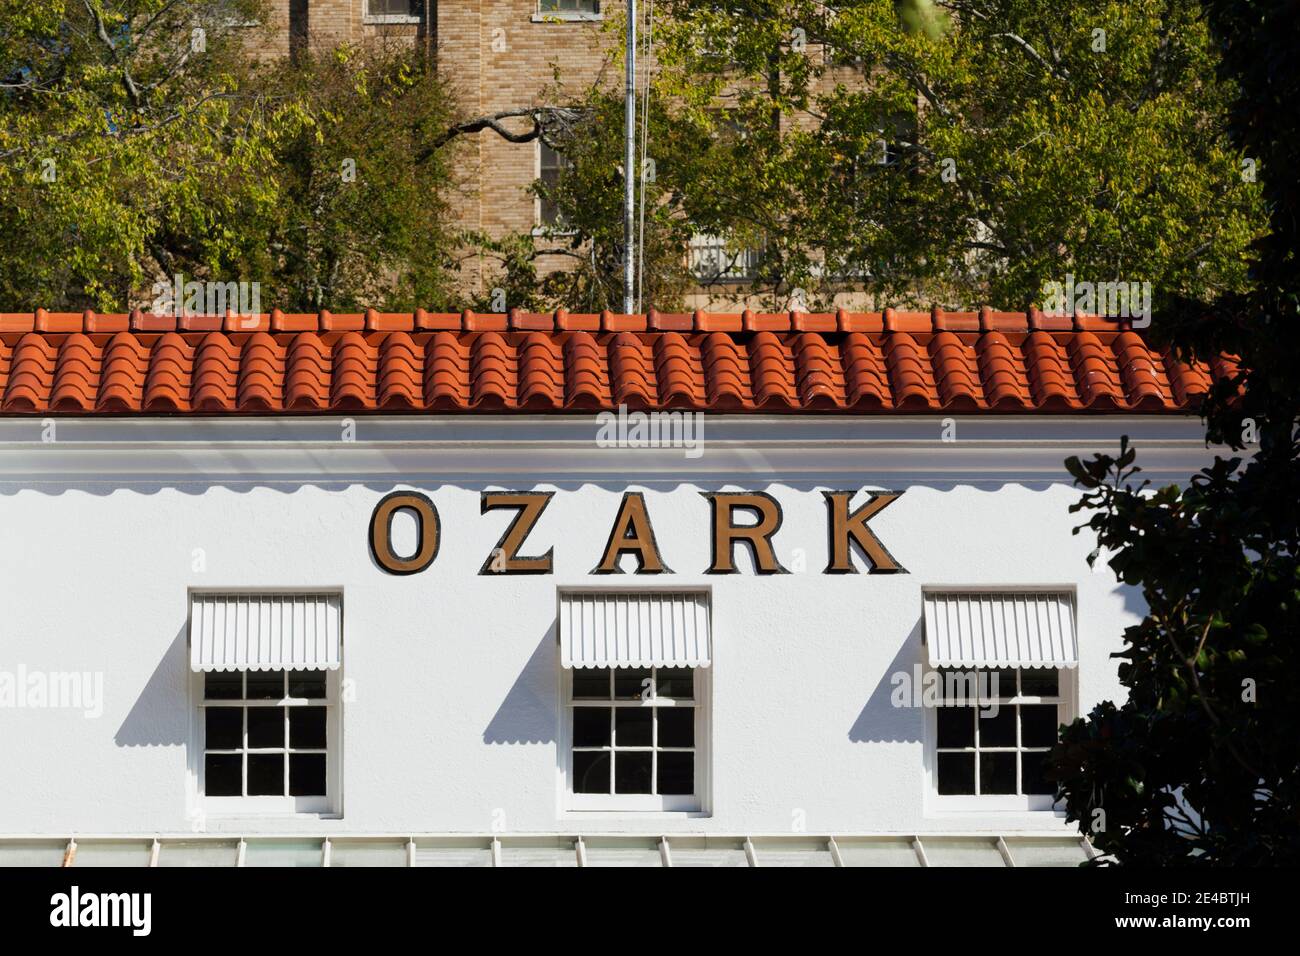 Facade of the Ozark Bathhouse, Bathhouse Row, Hot Springs National Park, Hot Springs, Garland County, Arkansas, USA Stock Photo